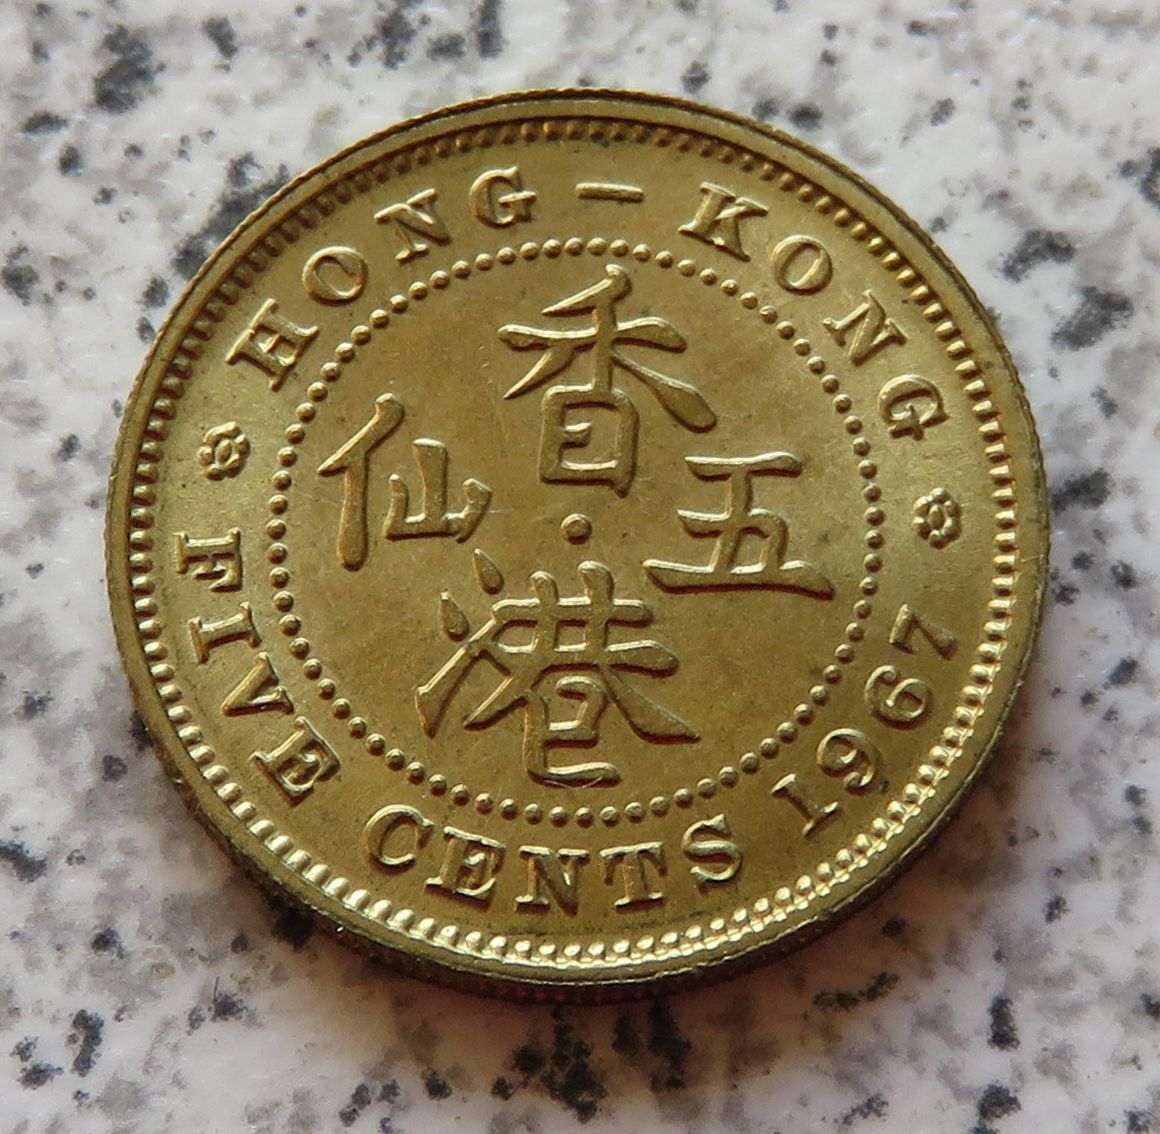  Hong Kong 5 Cents 1967   